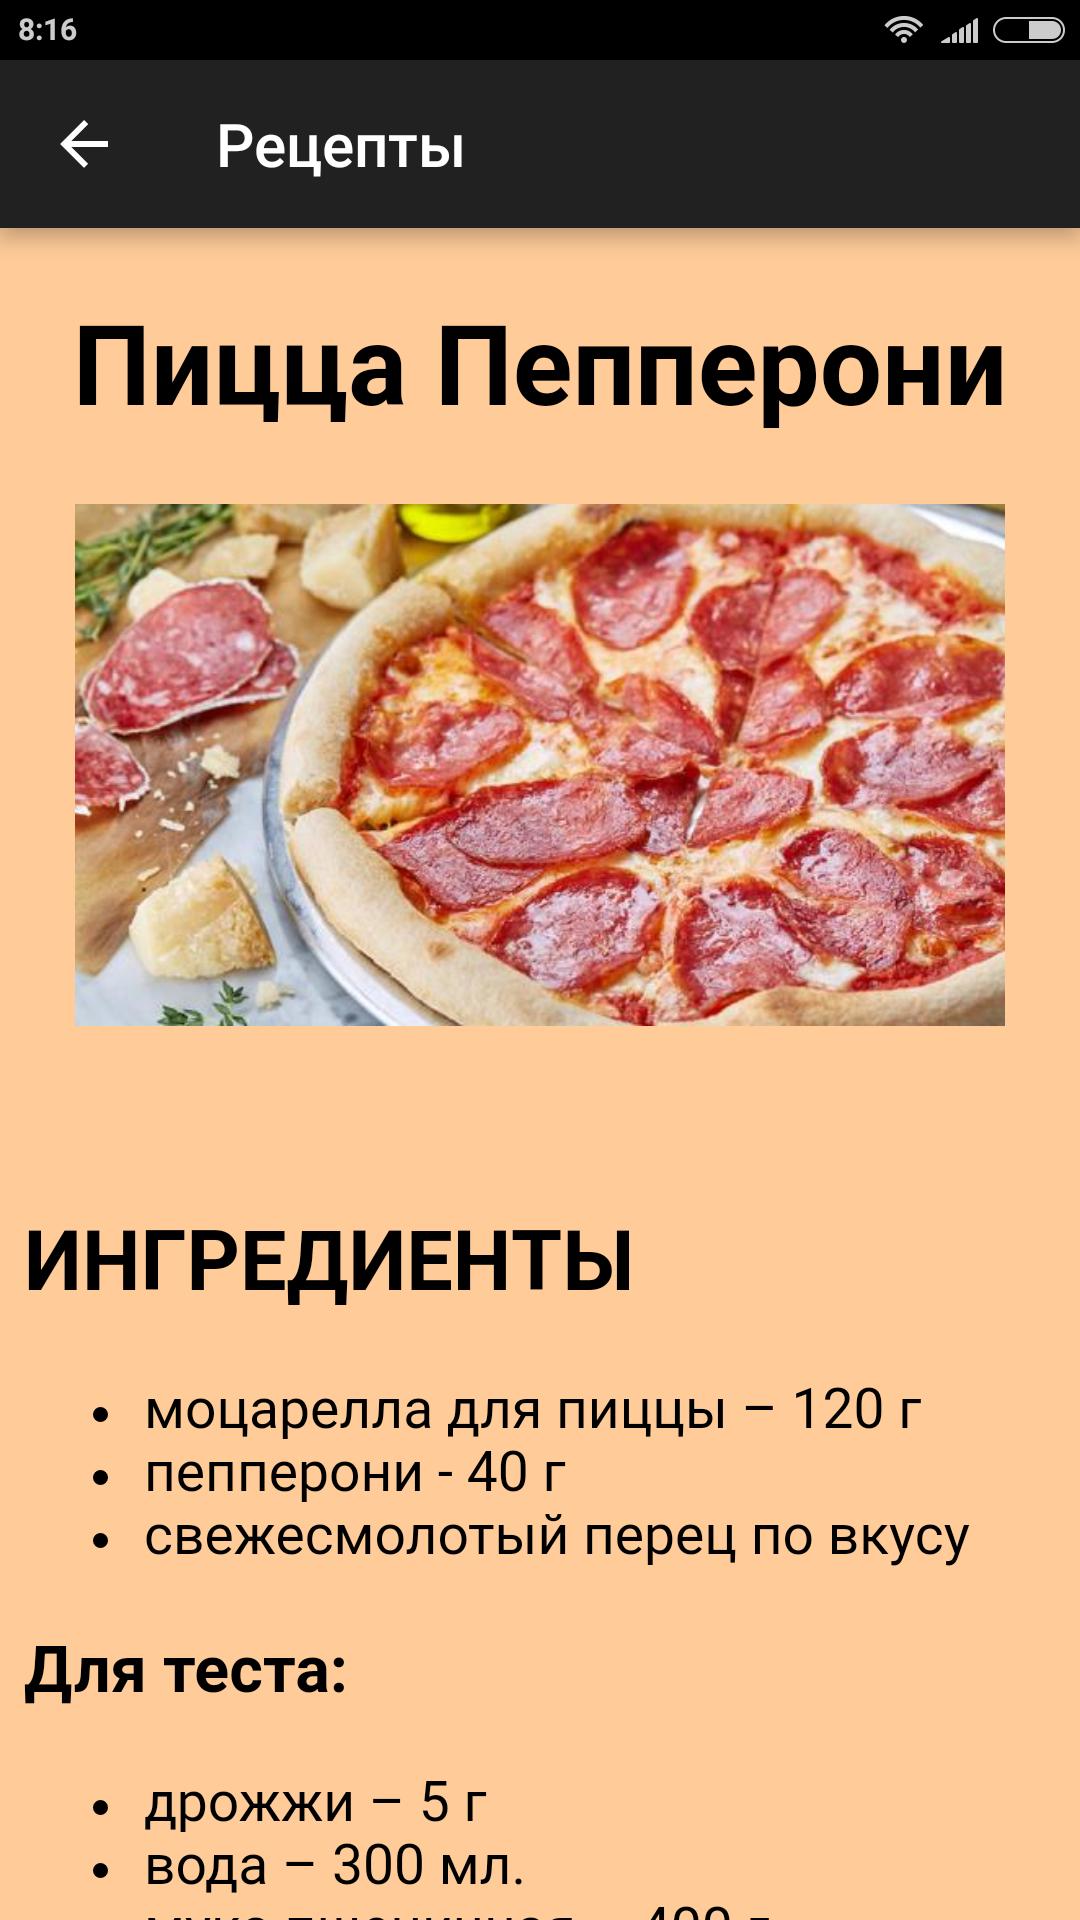 список ингредиентов для пиццы пепперони фото 64